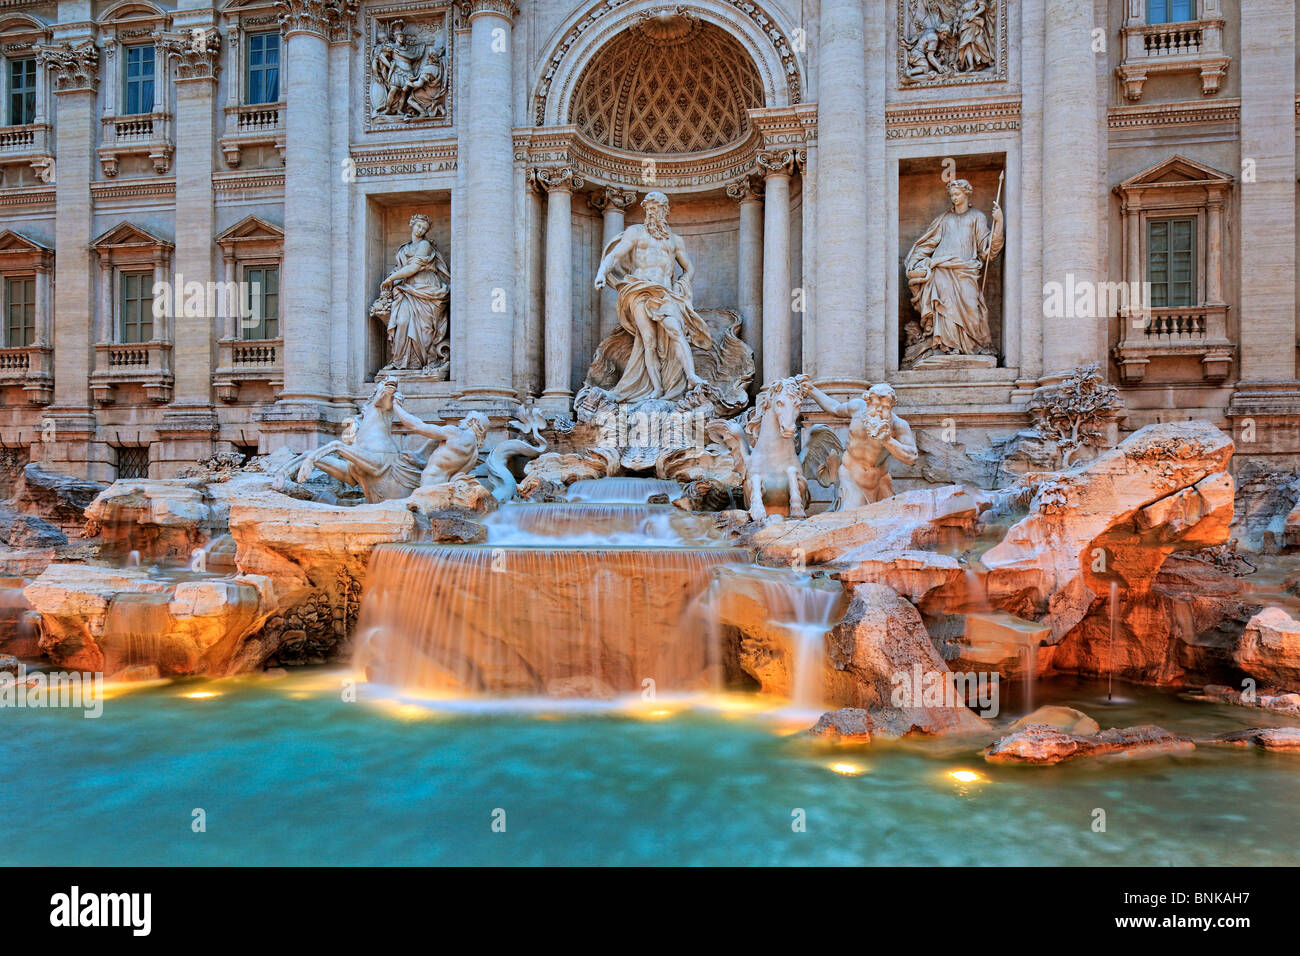 La fontaine de Trevi (Italien : Fontana di Trevi) est une fontaine dans le rione de Trevi à Rome, Italie Banque D'Images